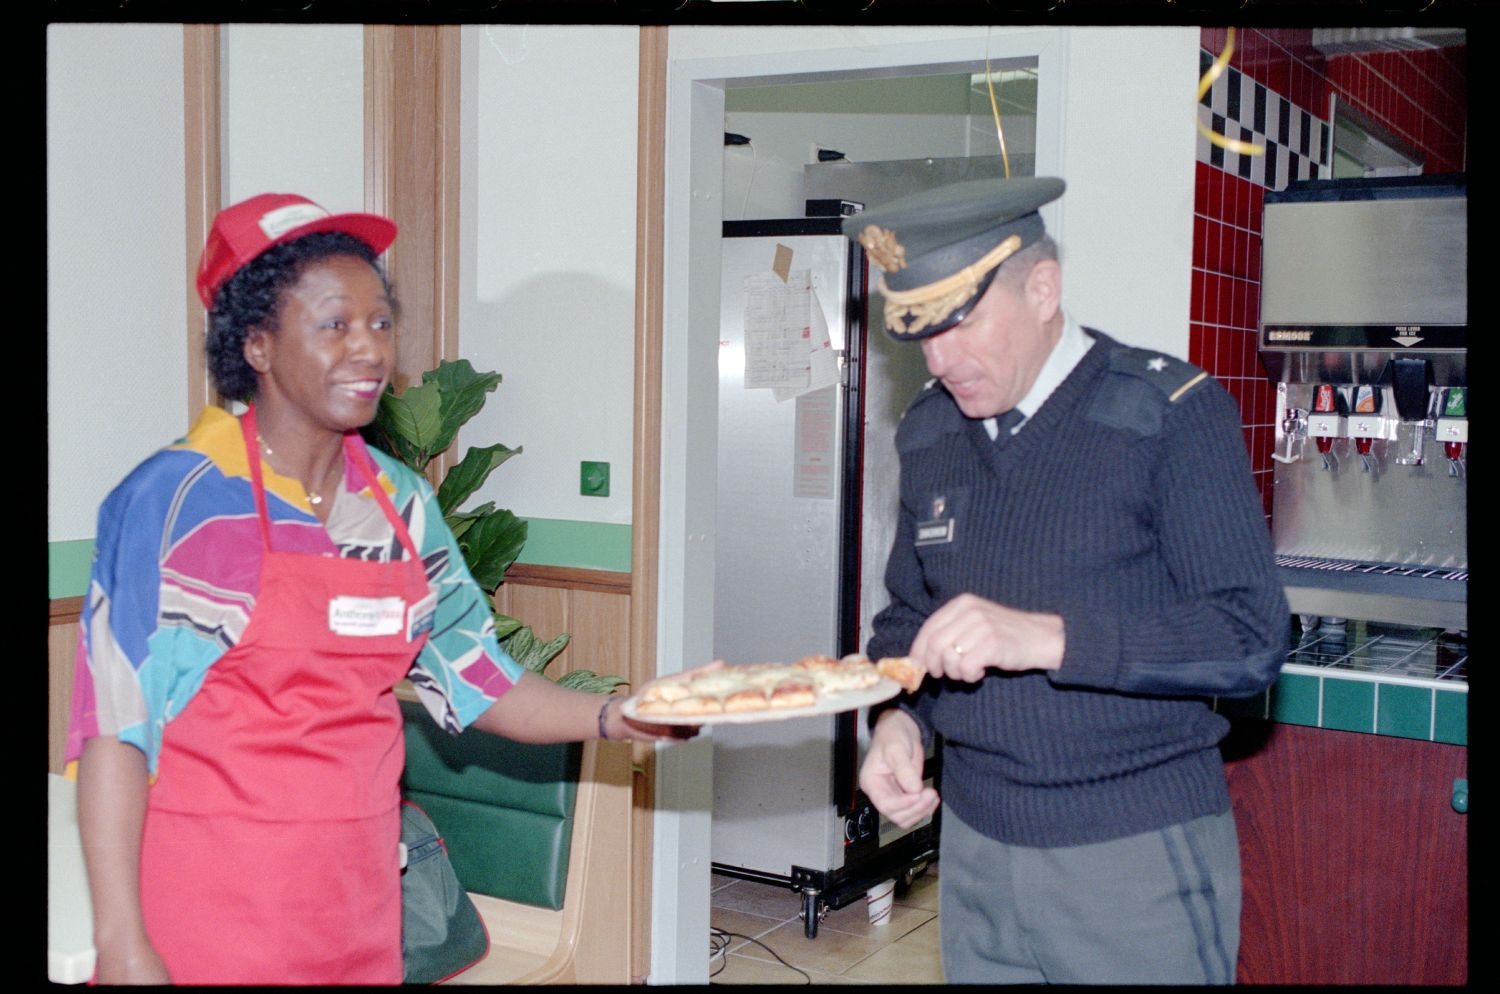 Fotografie: Eröffnung einer Anthony`s Pizza Filiale an der Truman Plaza in Berlin-Dahlem (AlliiertenMuseum/U.S. Army Photograph Public Domain Mark)